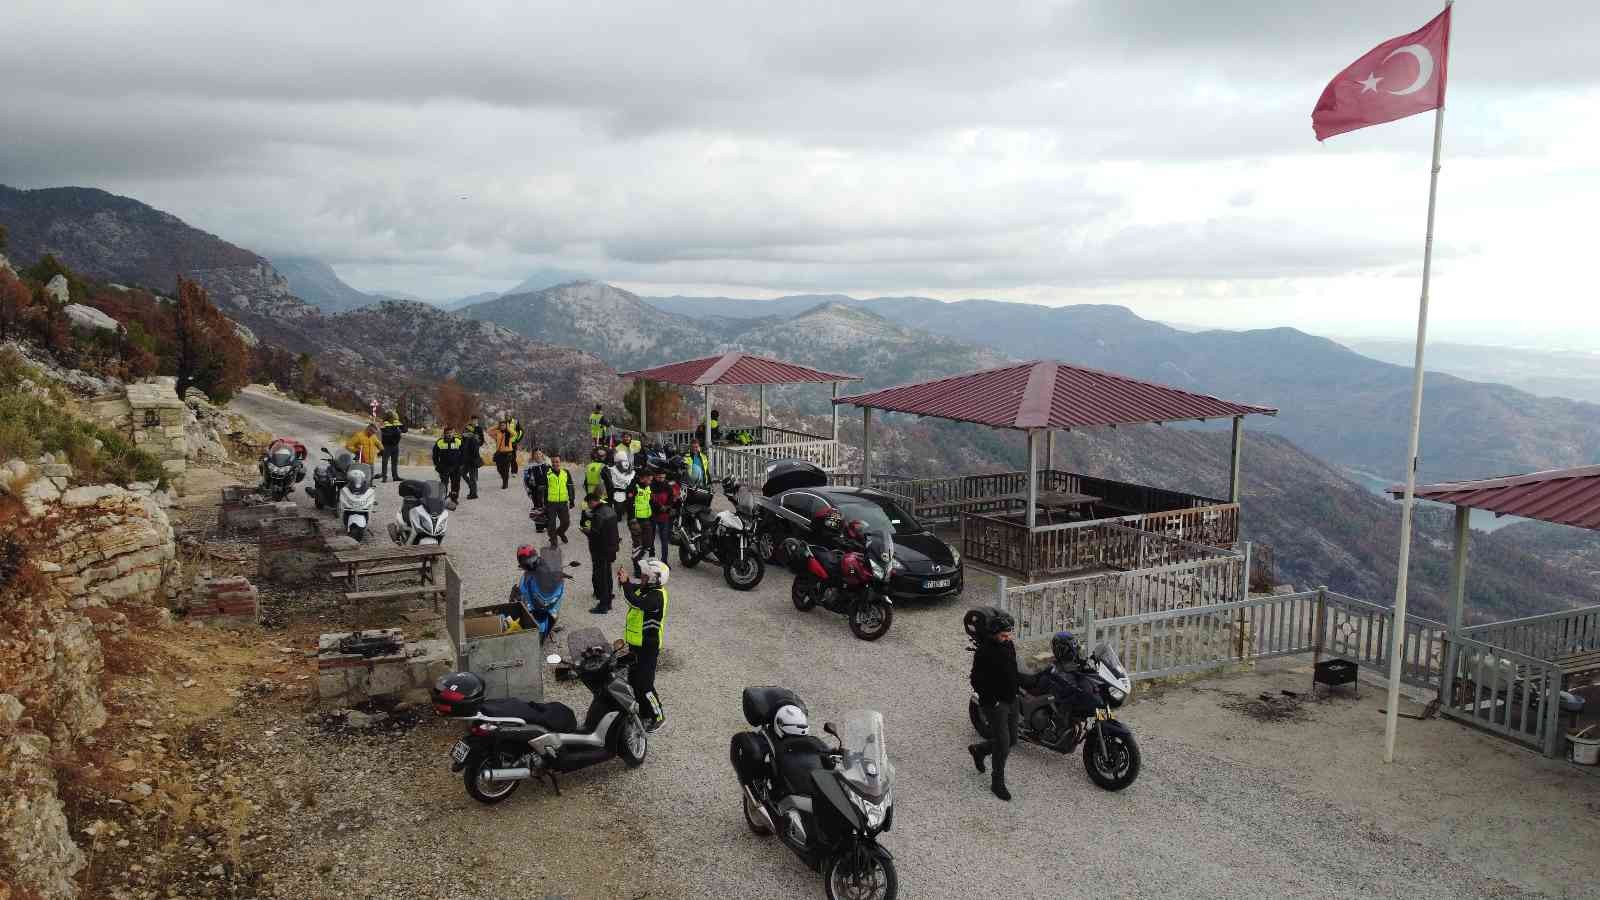 Antalya’da 15 kişilik motosiklet timi ilçe ilçe gezip, ilçelerin tanıtımını yapıyor #antalya